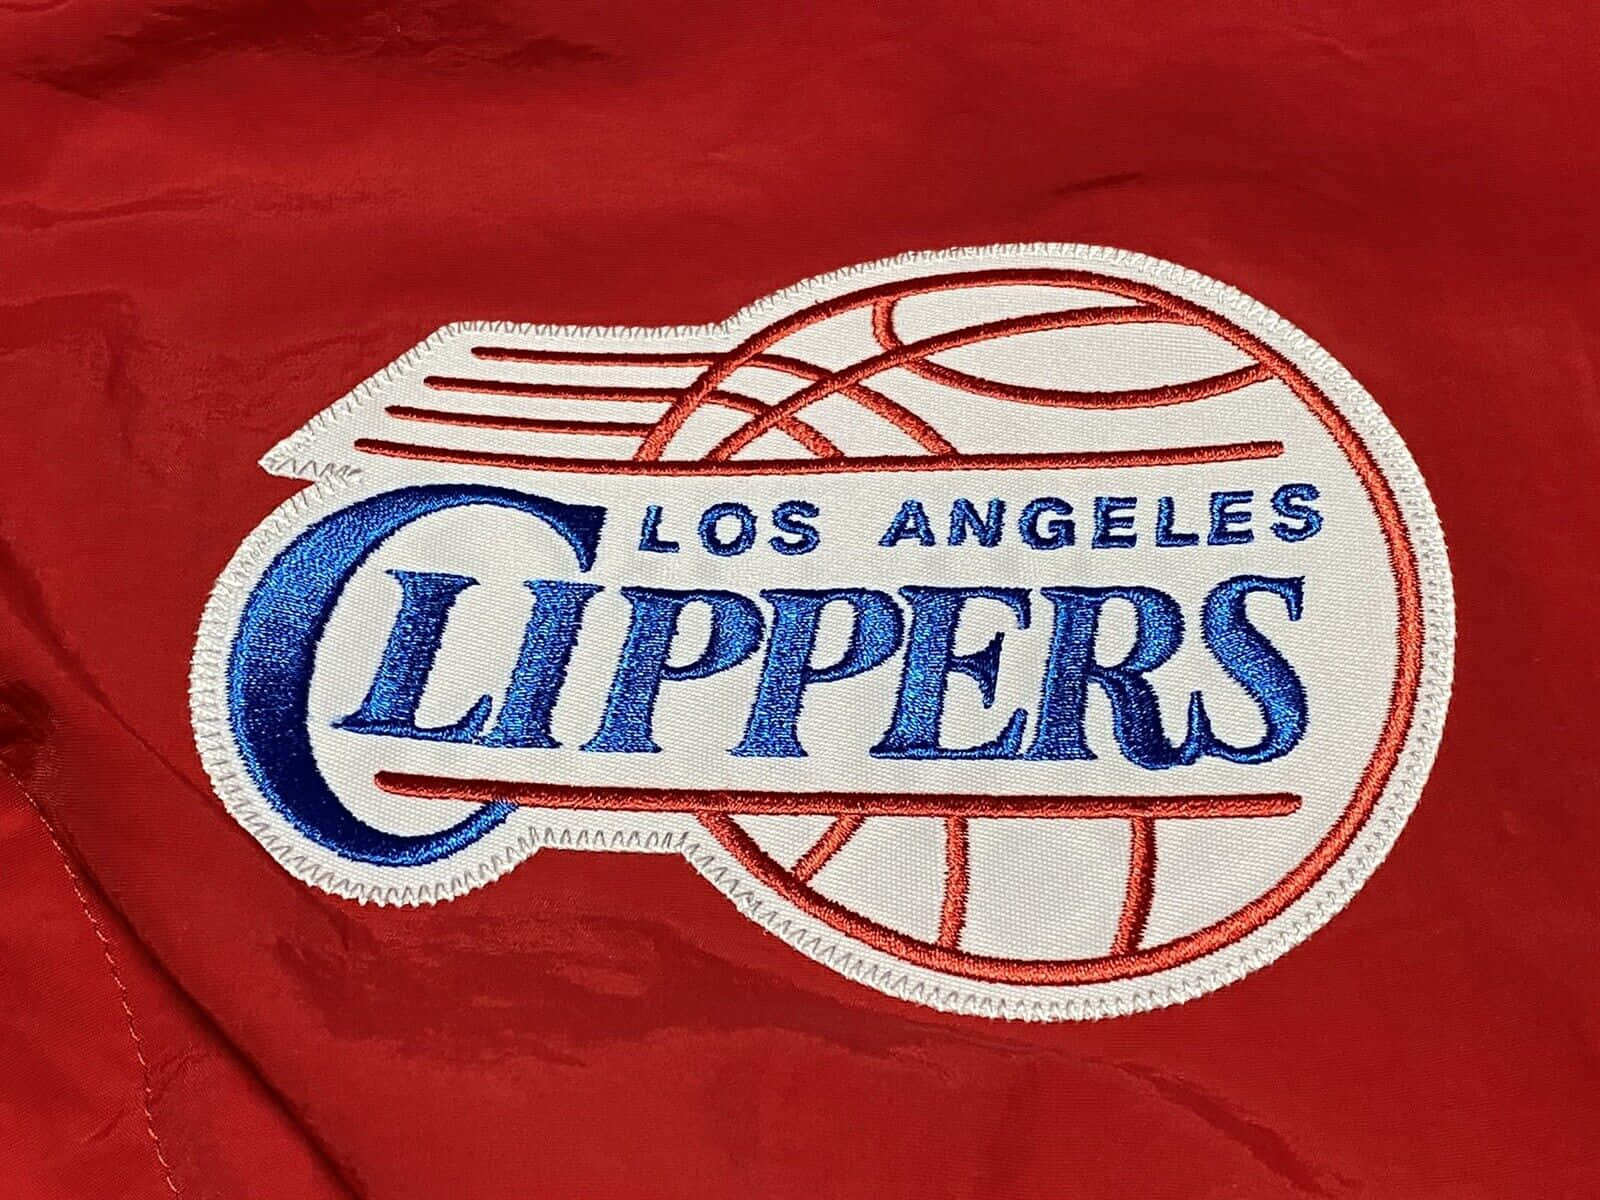 Logoen Relieve De Los La Clippers De 2010, Primer Plano De Tela Roja Fondo de pantalla